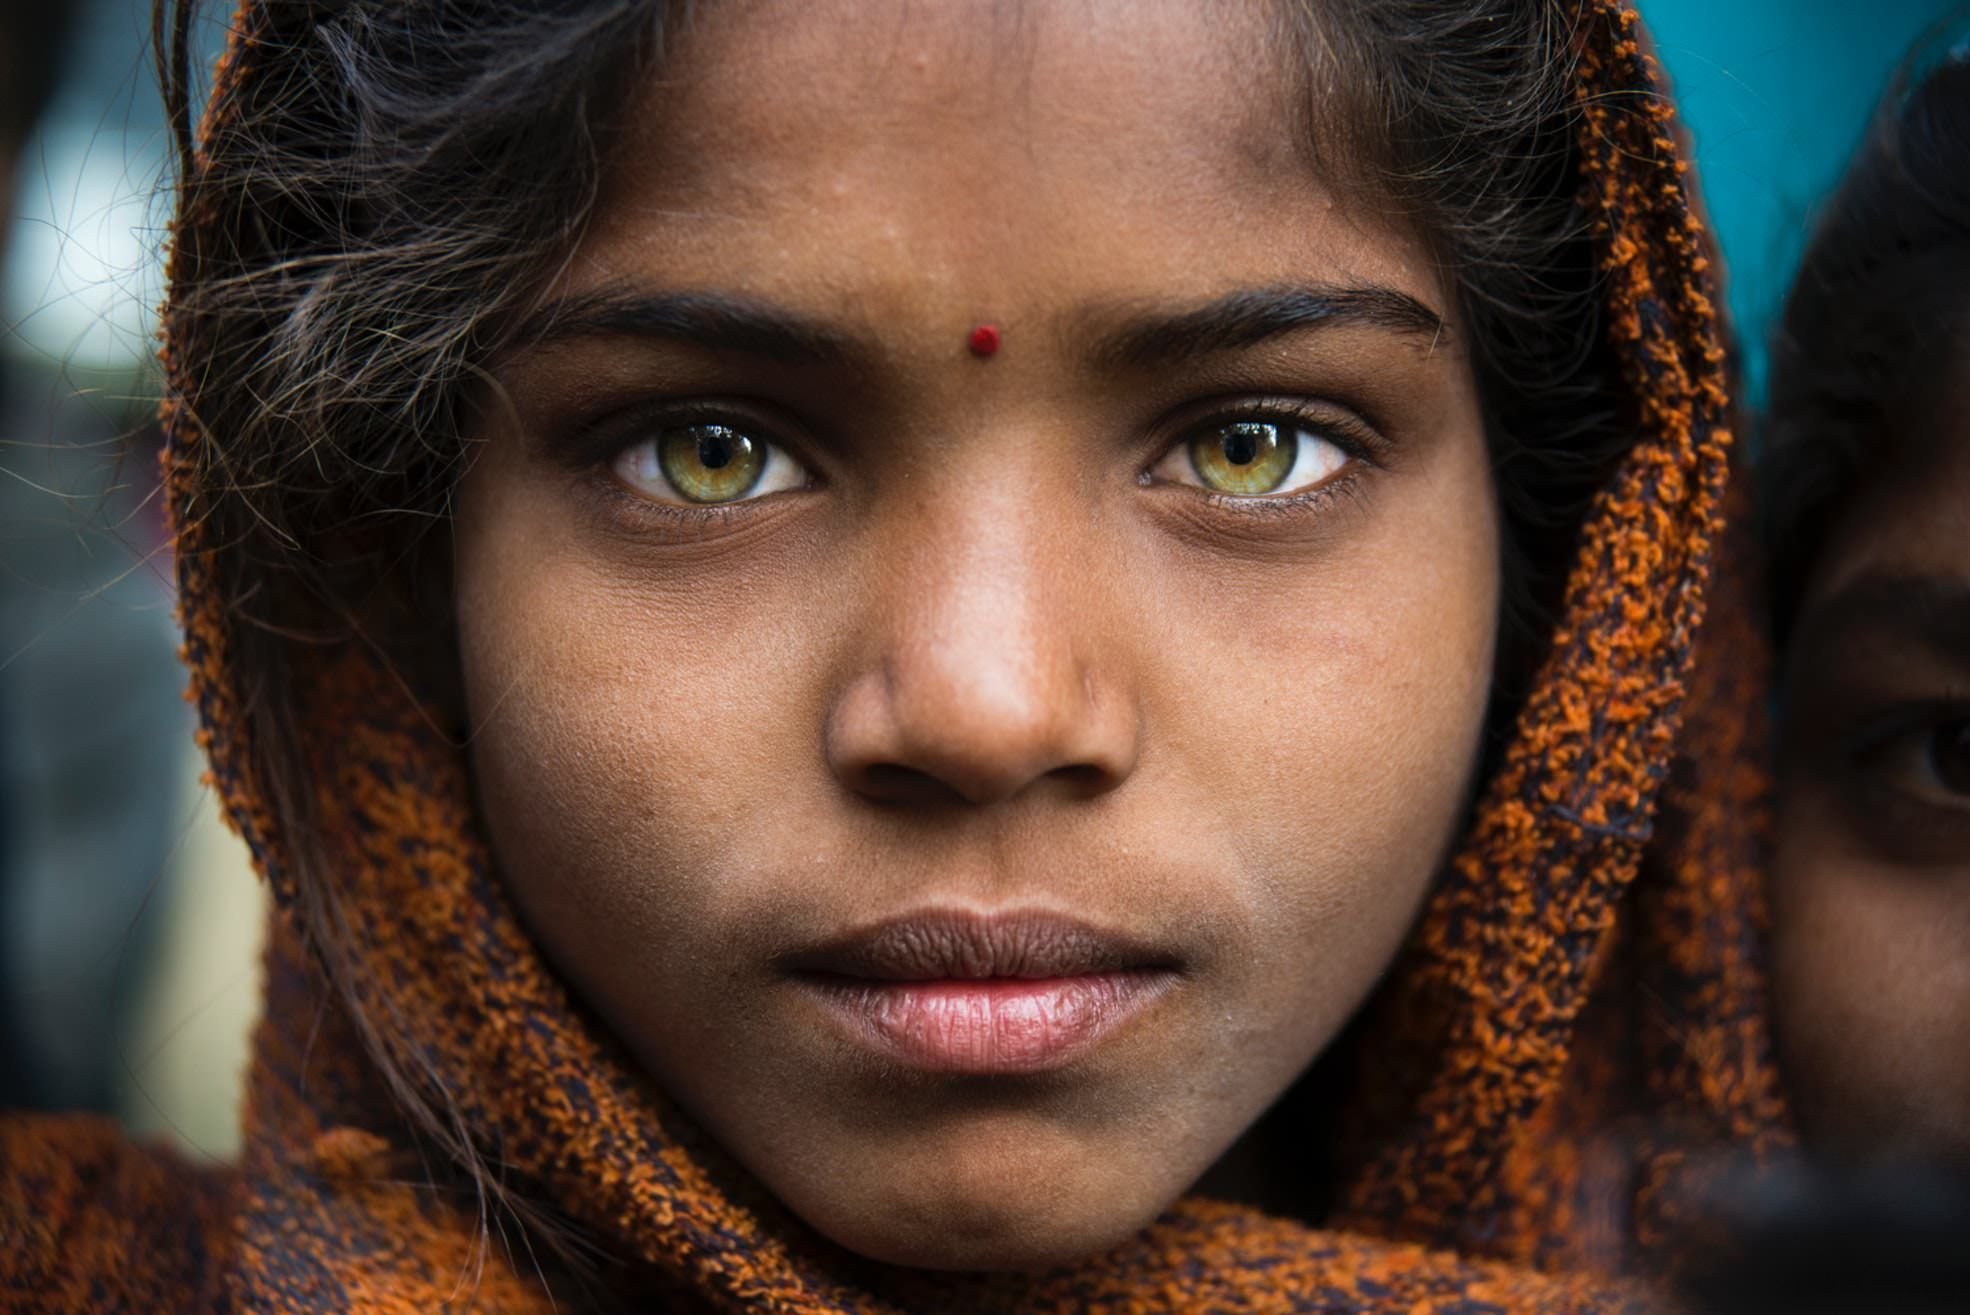 Самые лучшие картинки человека. Европеоидная раса в Индии. Необычные глаза. Девушки с необычными глазами. Самые красивые глаза.